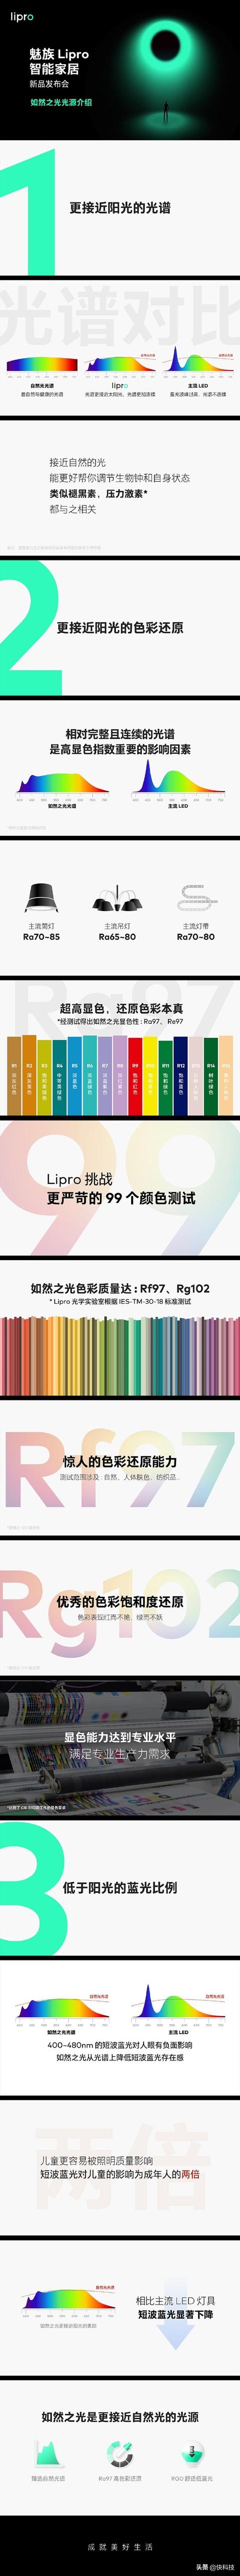 魅族Lipro全系搭载如然之光：成本比主流LED高出35倍